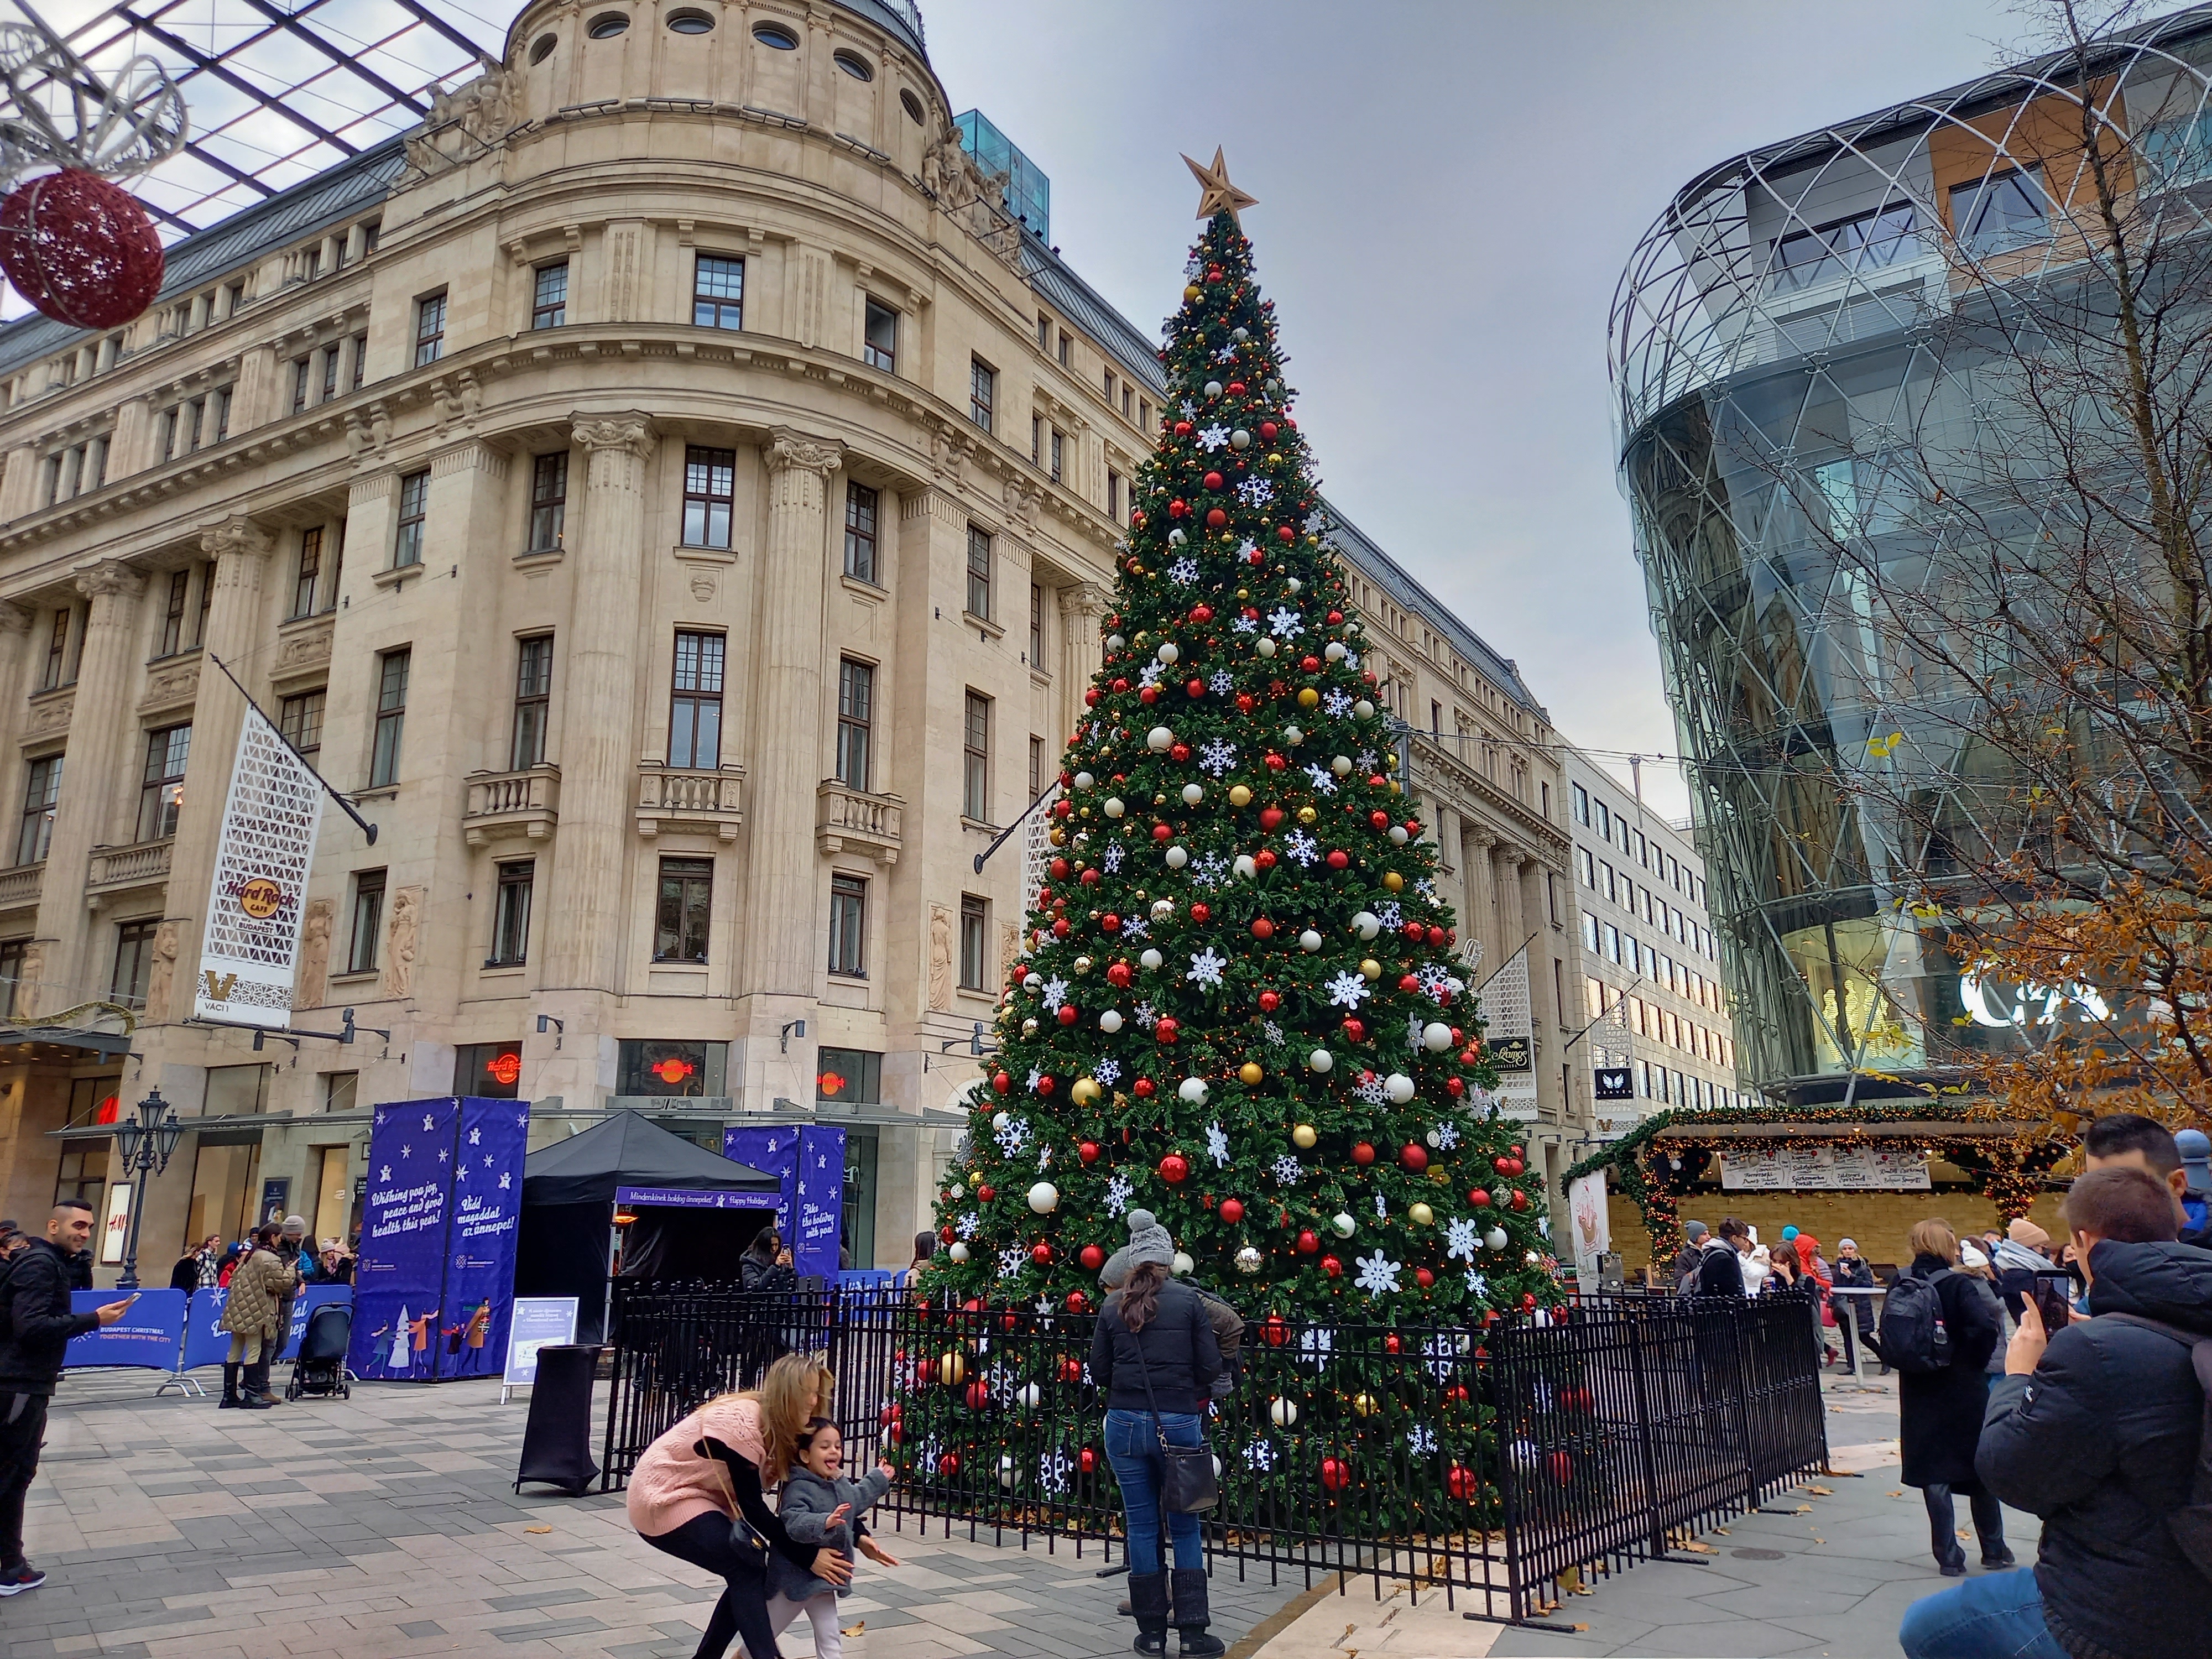 Megnyitott az Adventi és Karácsonyi Vásár a Vörösmarty téren – Közel 50 kiállítótól vásárolhatunk az ünnepekre